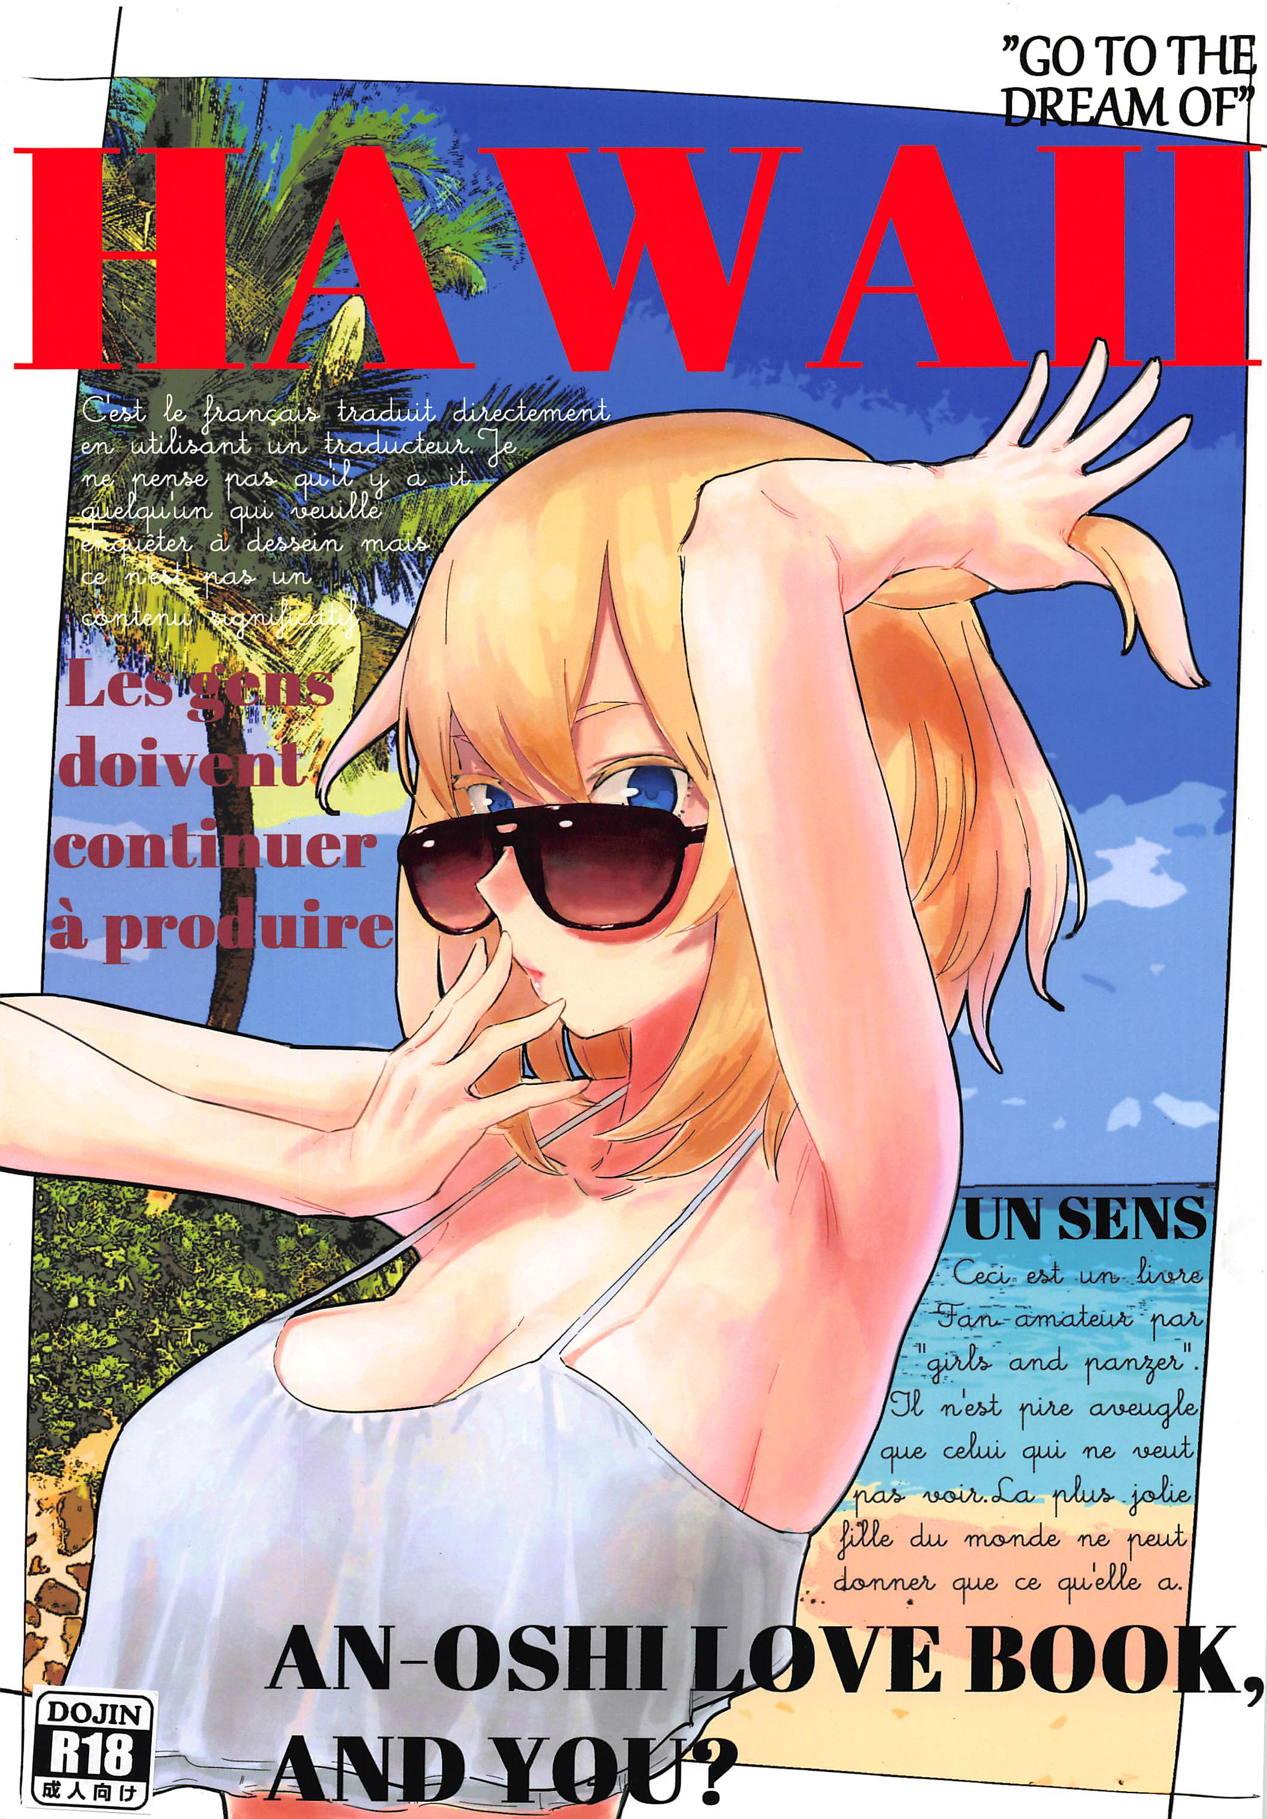 HAWAII 0